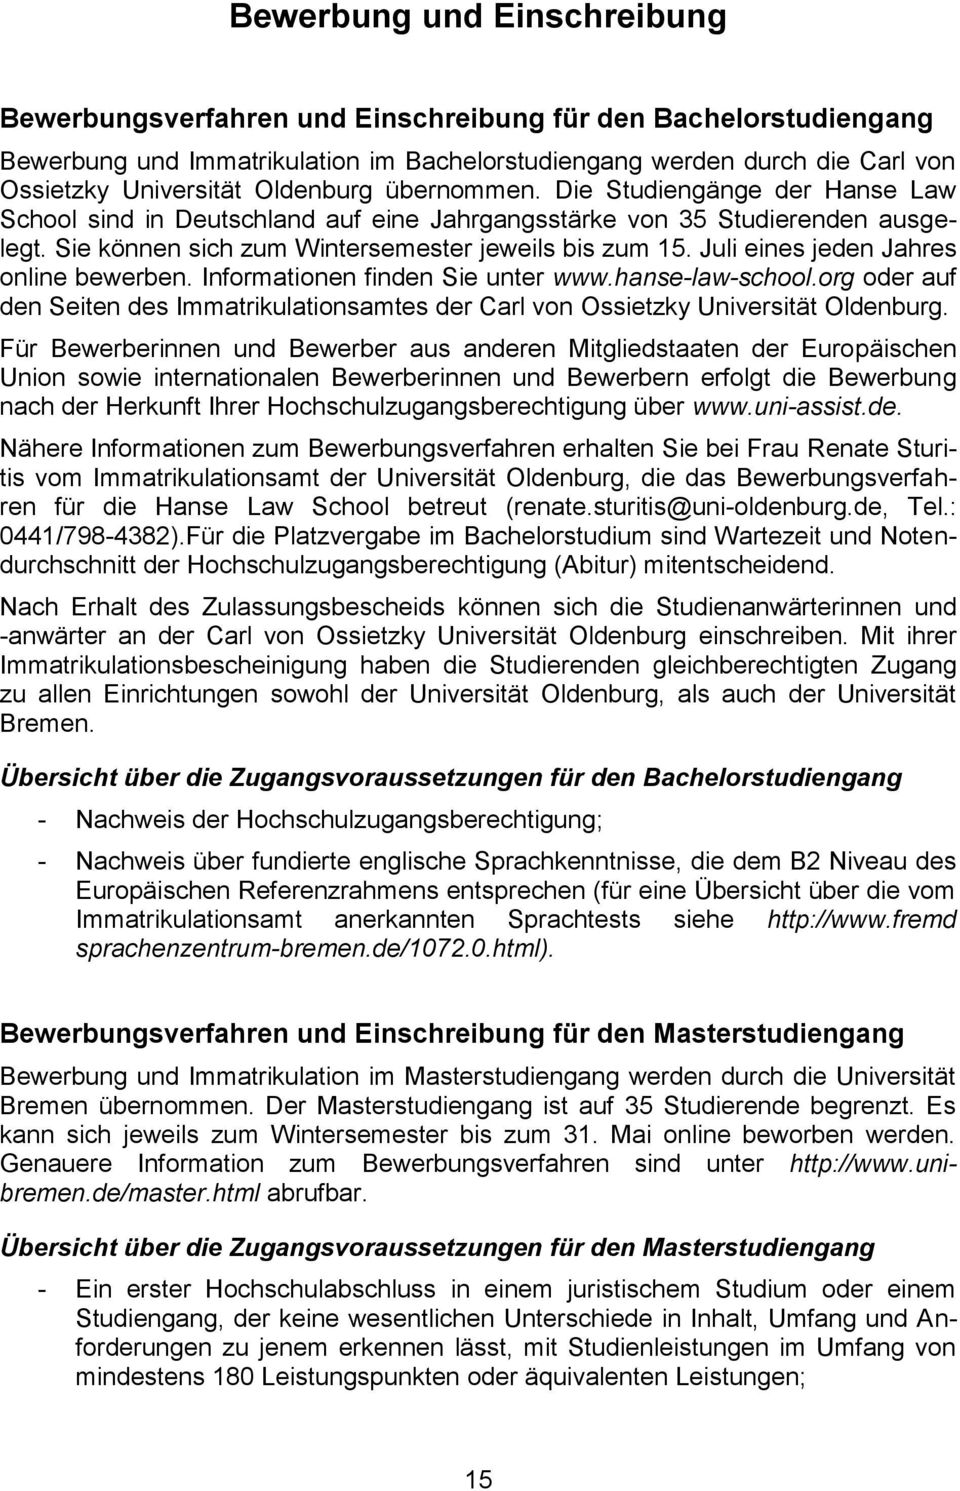 Juli eines jeden Jahres online bewerben. Informationen finden Sie unter www.hanse-law-school.org oder auf den Seiten des Immatrikulationsamtes der Carl von Ossietzky Universität Oldenburg.